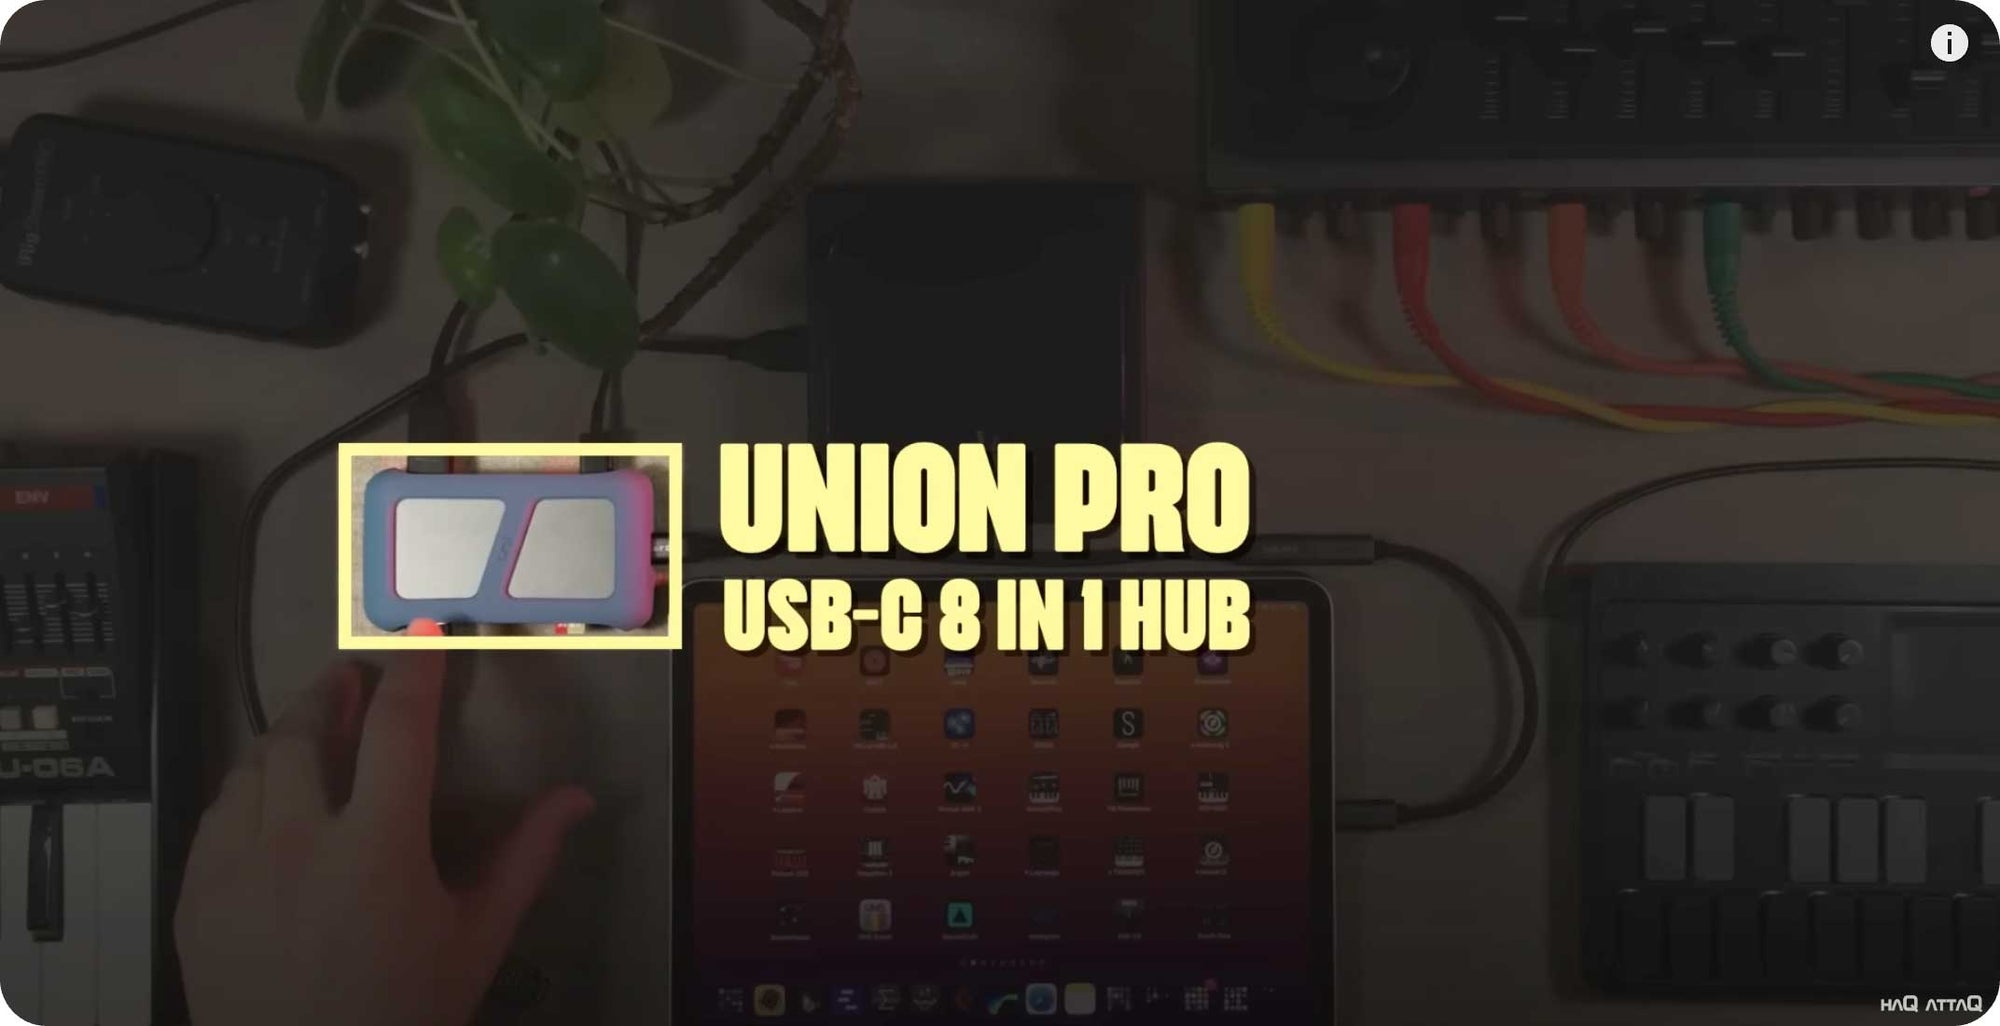 Buying a Great USB-C hub for iPad Pro | UNI Hub | haQ attaQ